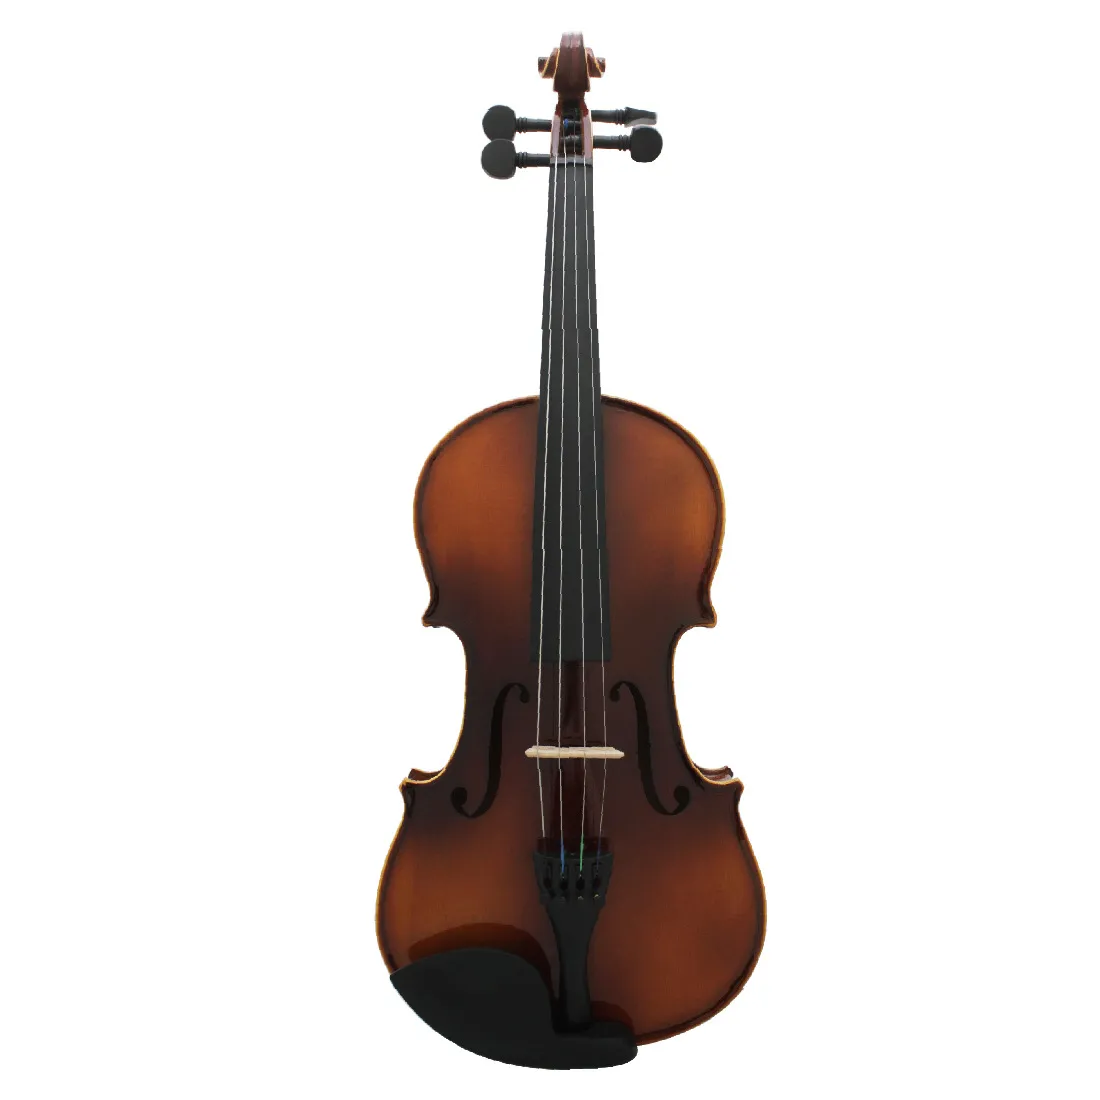 Instrumento de música de violín de grado 4/4 de prueba de rendimiento profesional de violín de borde blanco brillante de color natural de arce tallado a mano